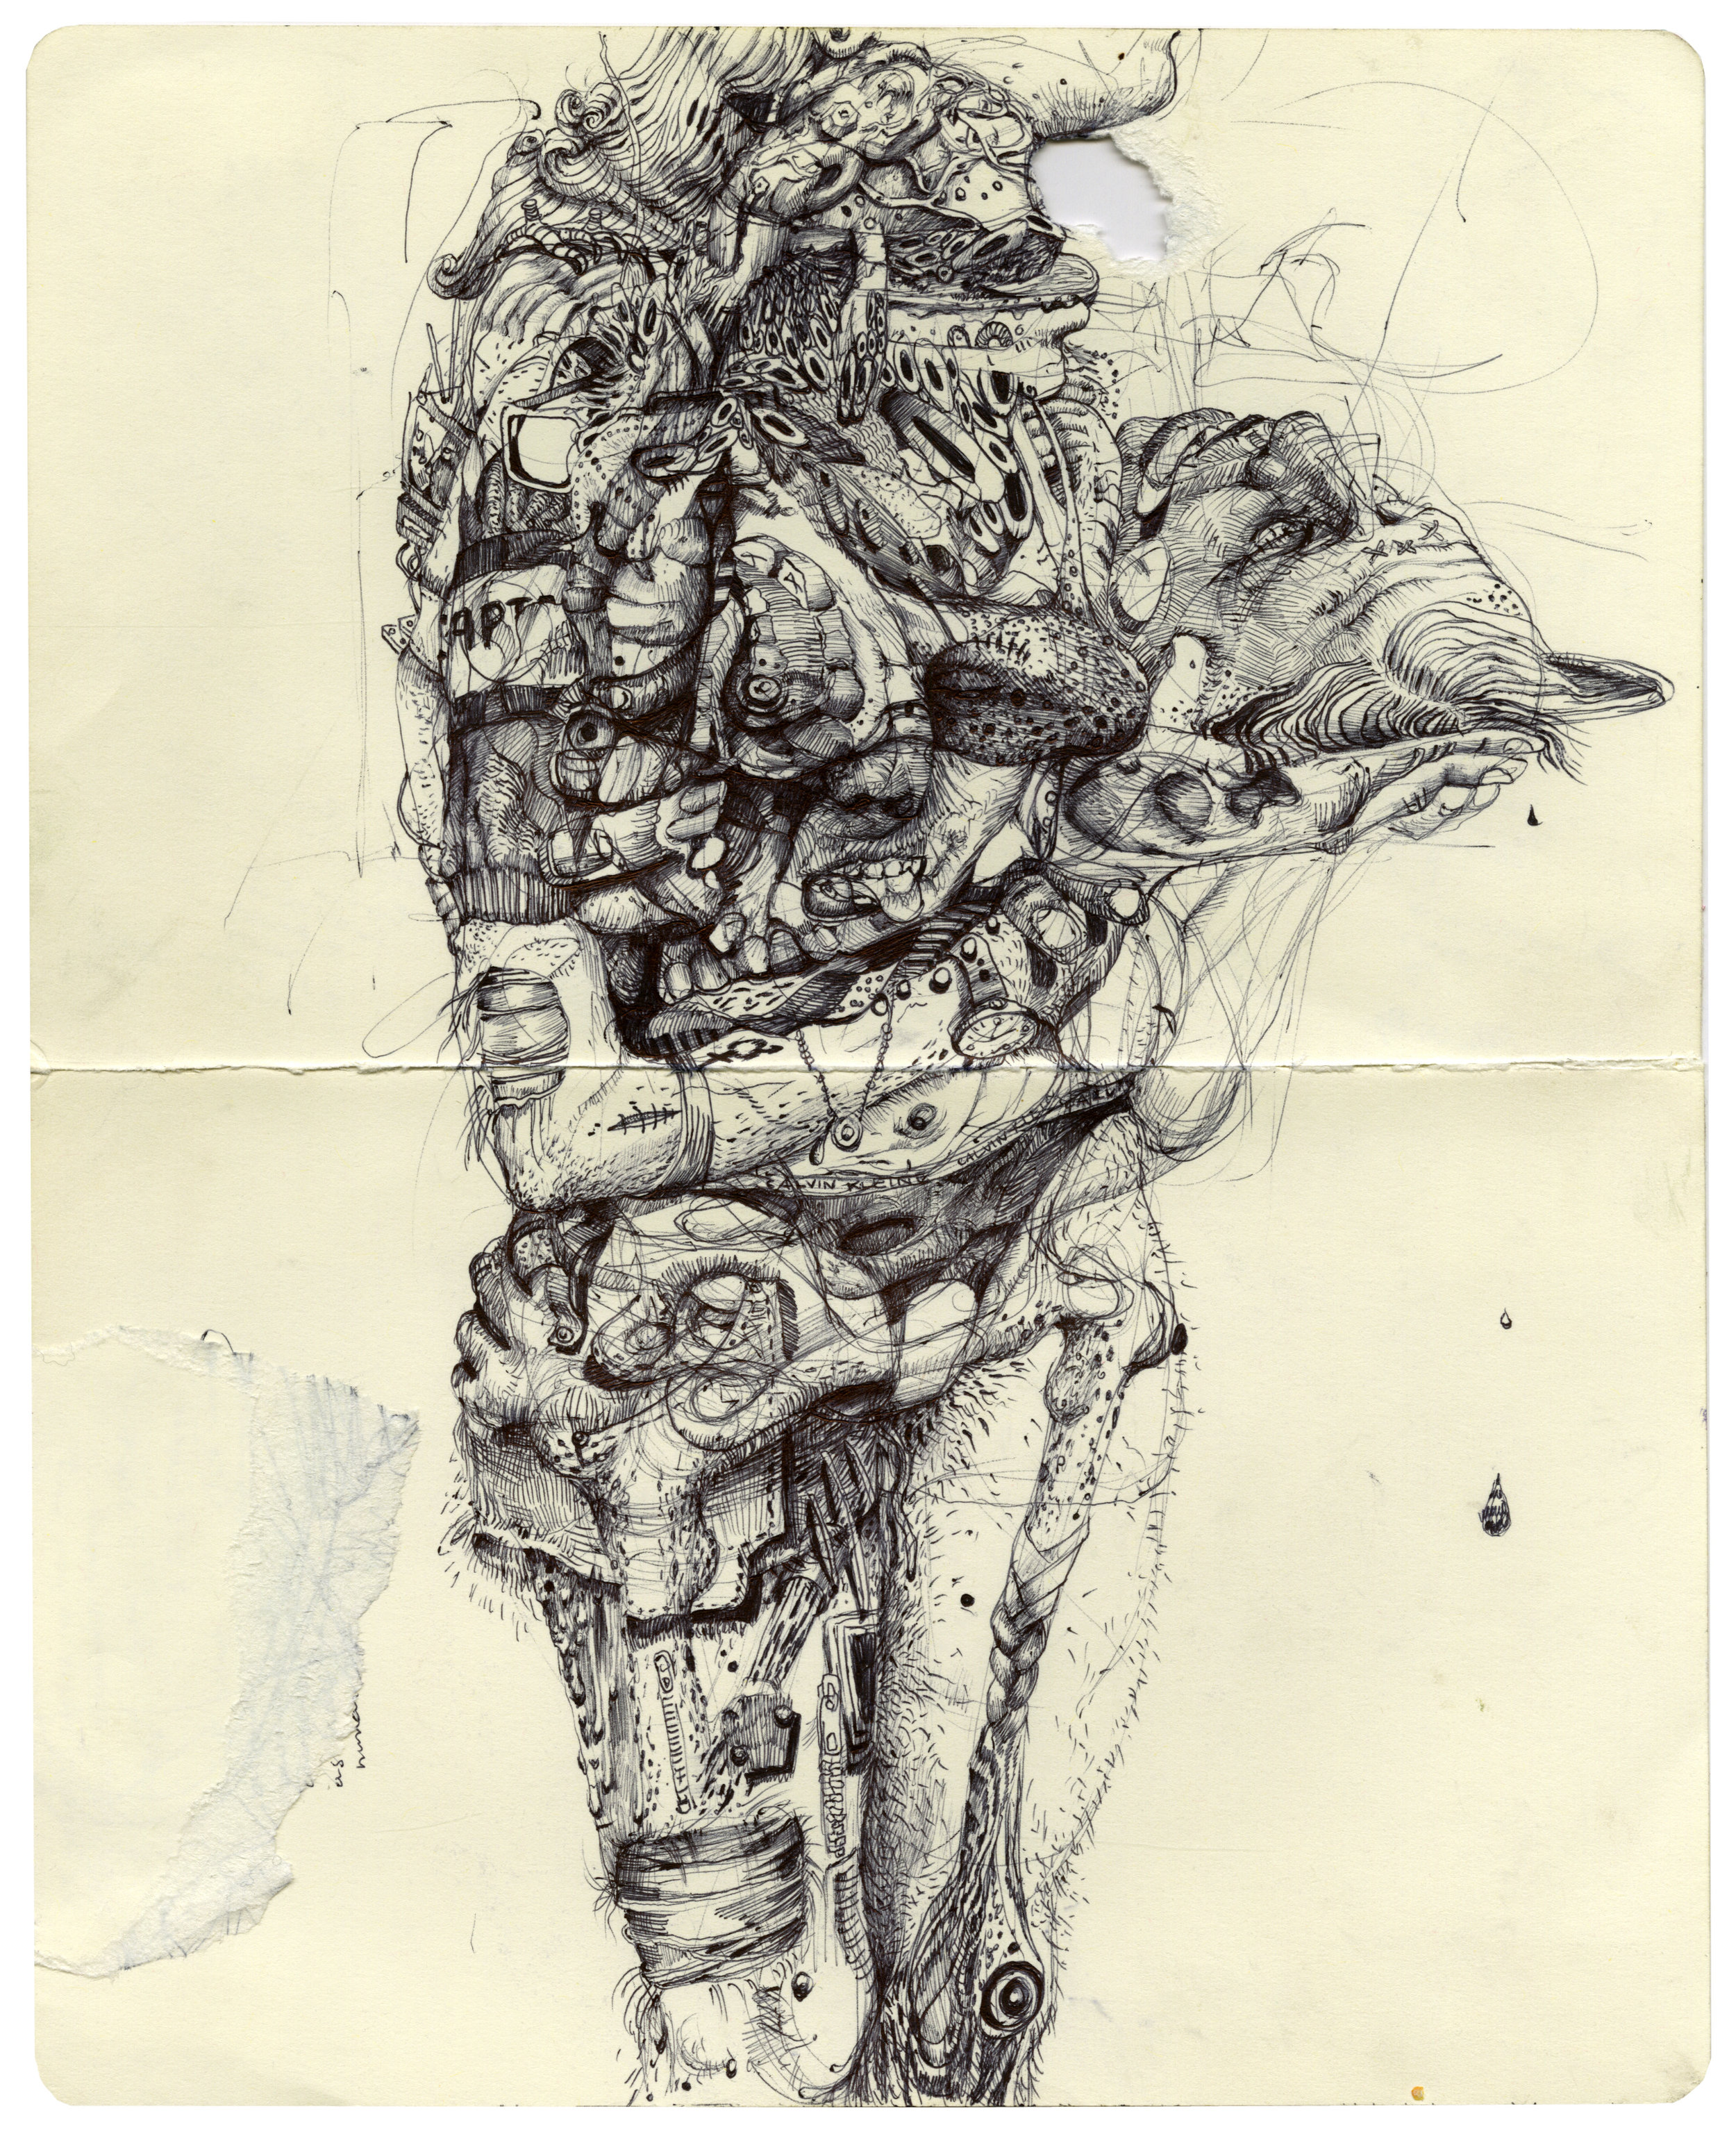   Head , 2018, ballpoint pen on paper, 10 x 8 in 